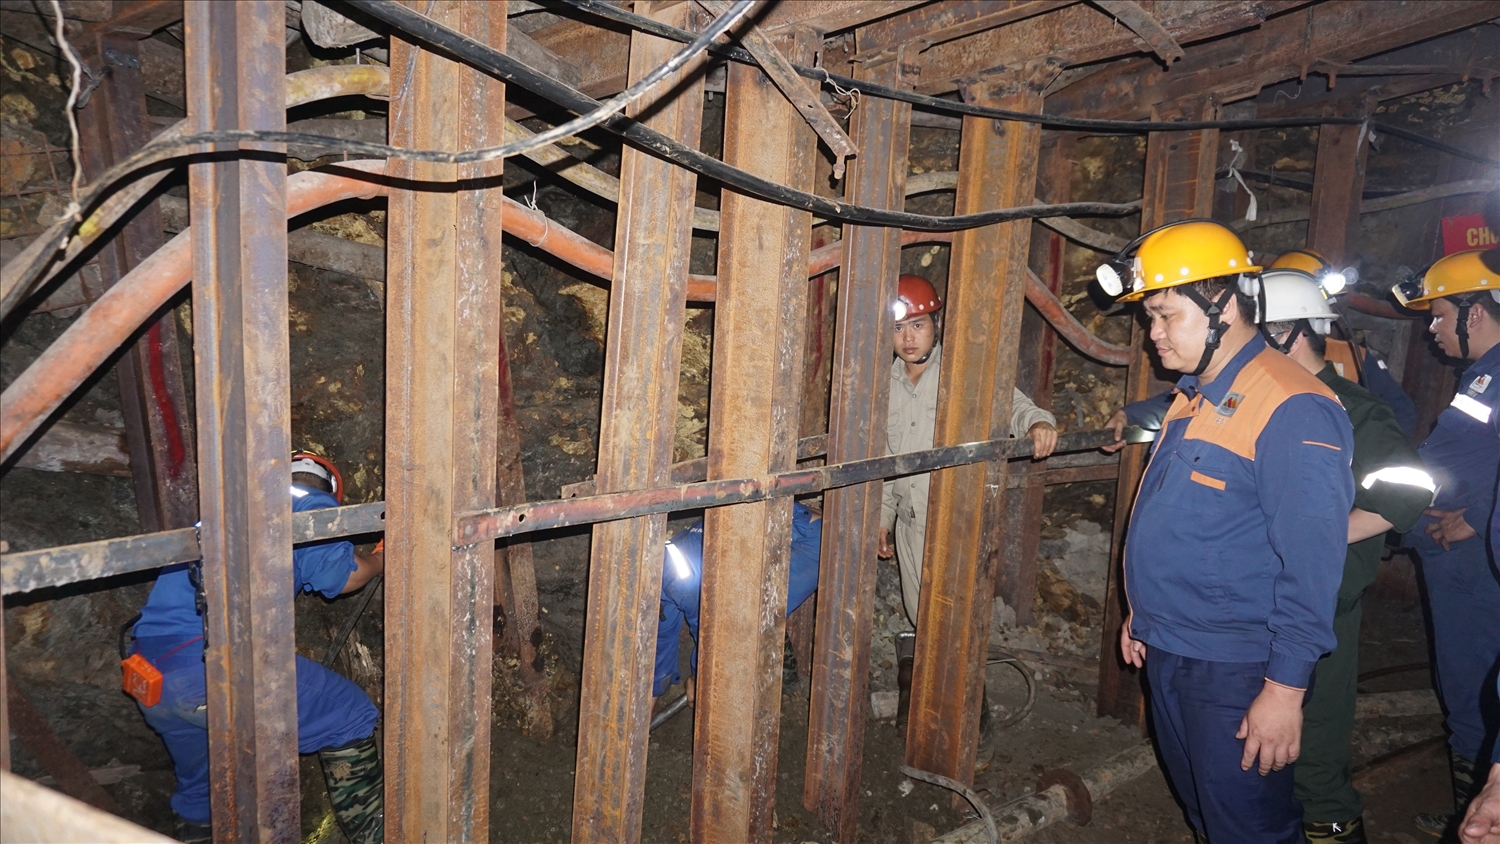 Khai thác hầm lò tiềm ẩn nhiều nguy cơ mất an toàn, đòi hỏi công nhân phải tuân thủ nghiêm ngặt các quy định an toàn lao động